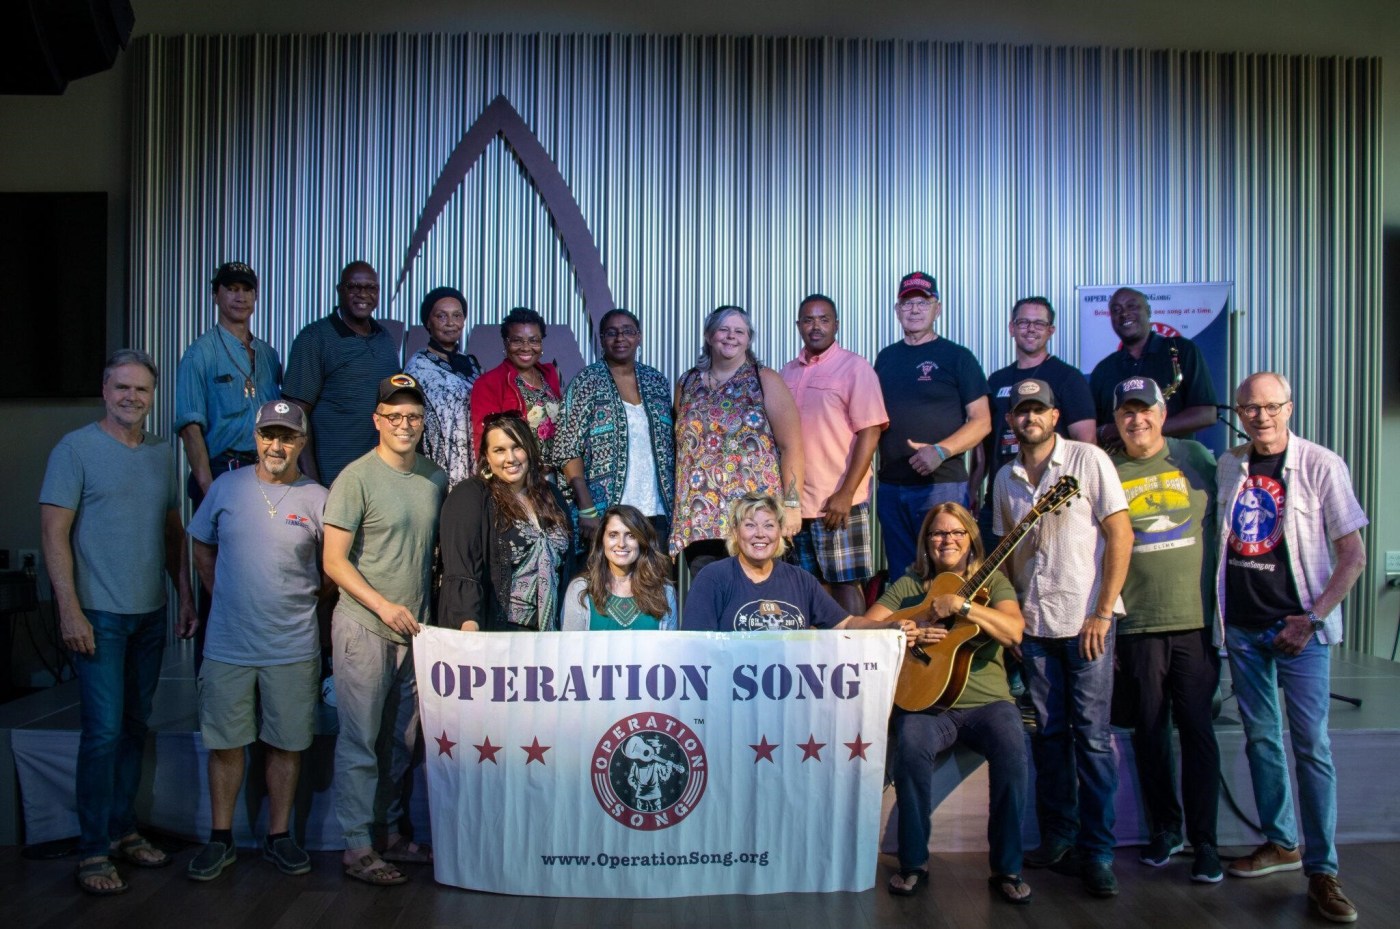 Veterans go to Nashville for songwriting retreat